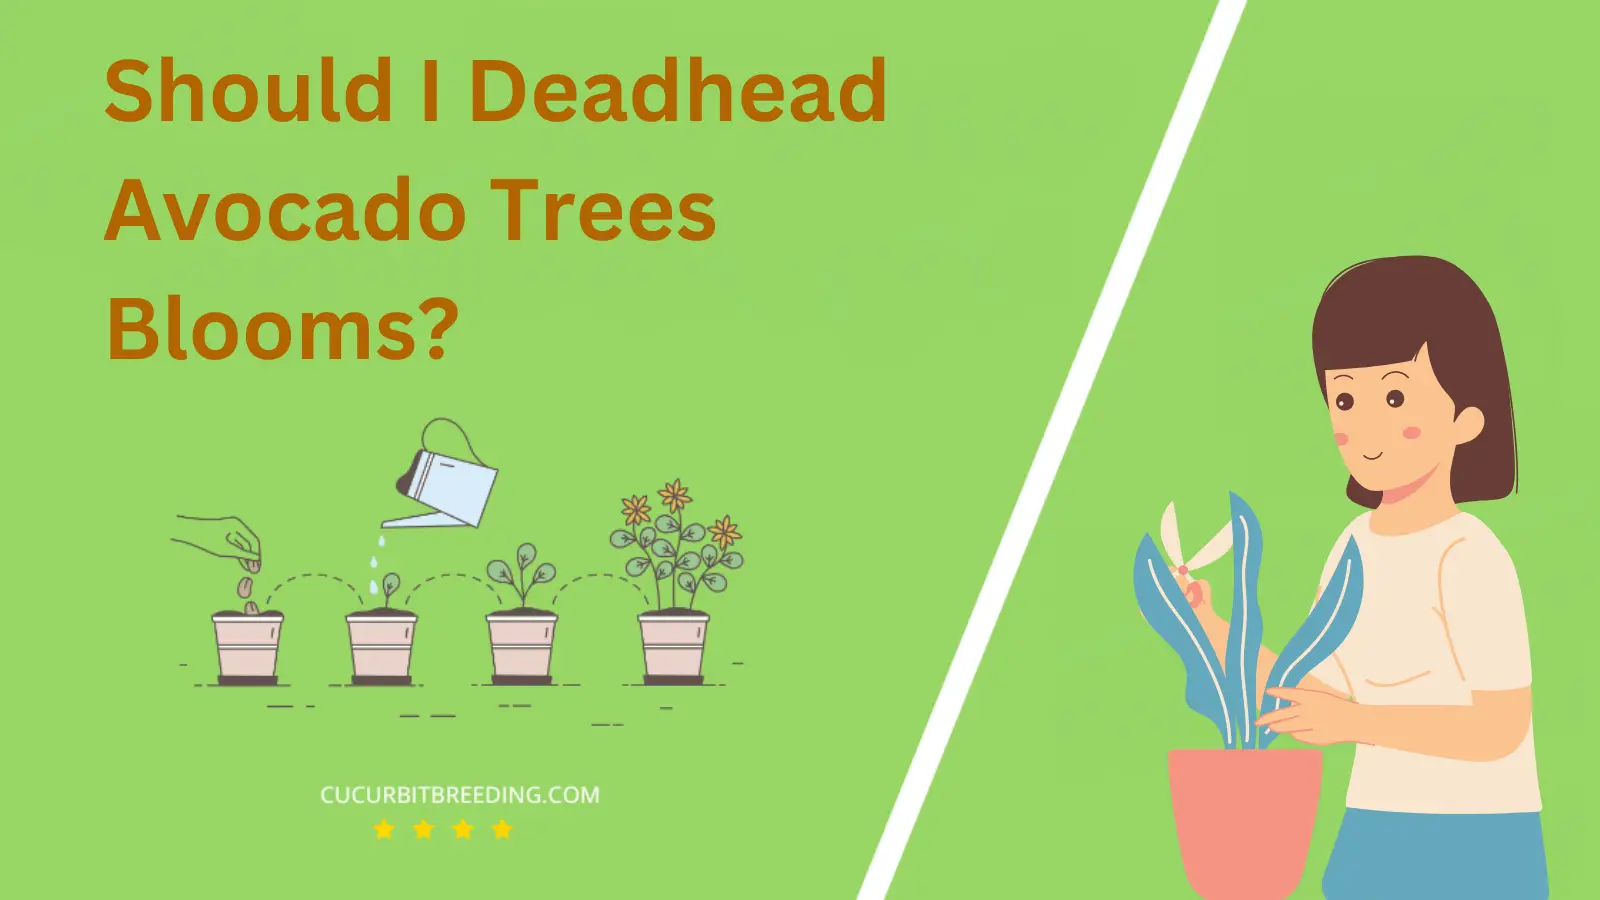 Should I Deadhead Avocado Trees Blooms?